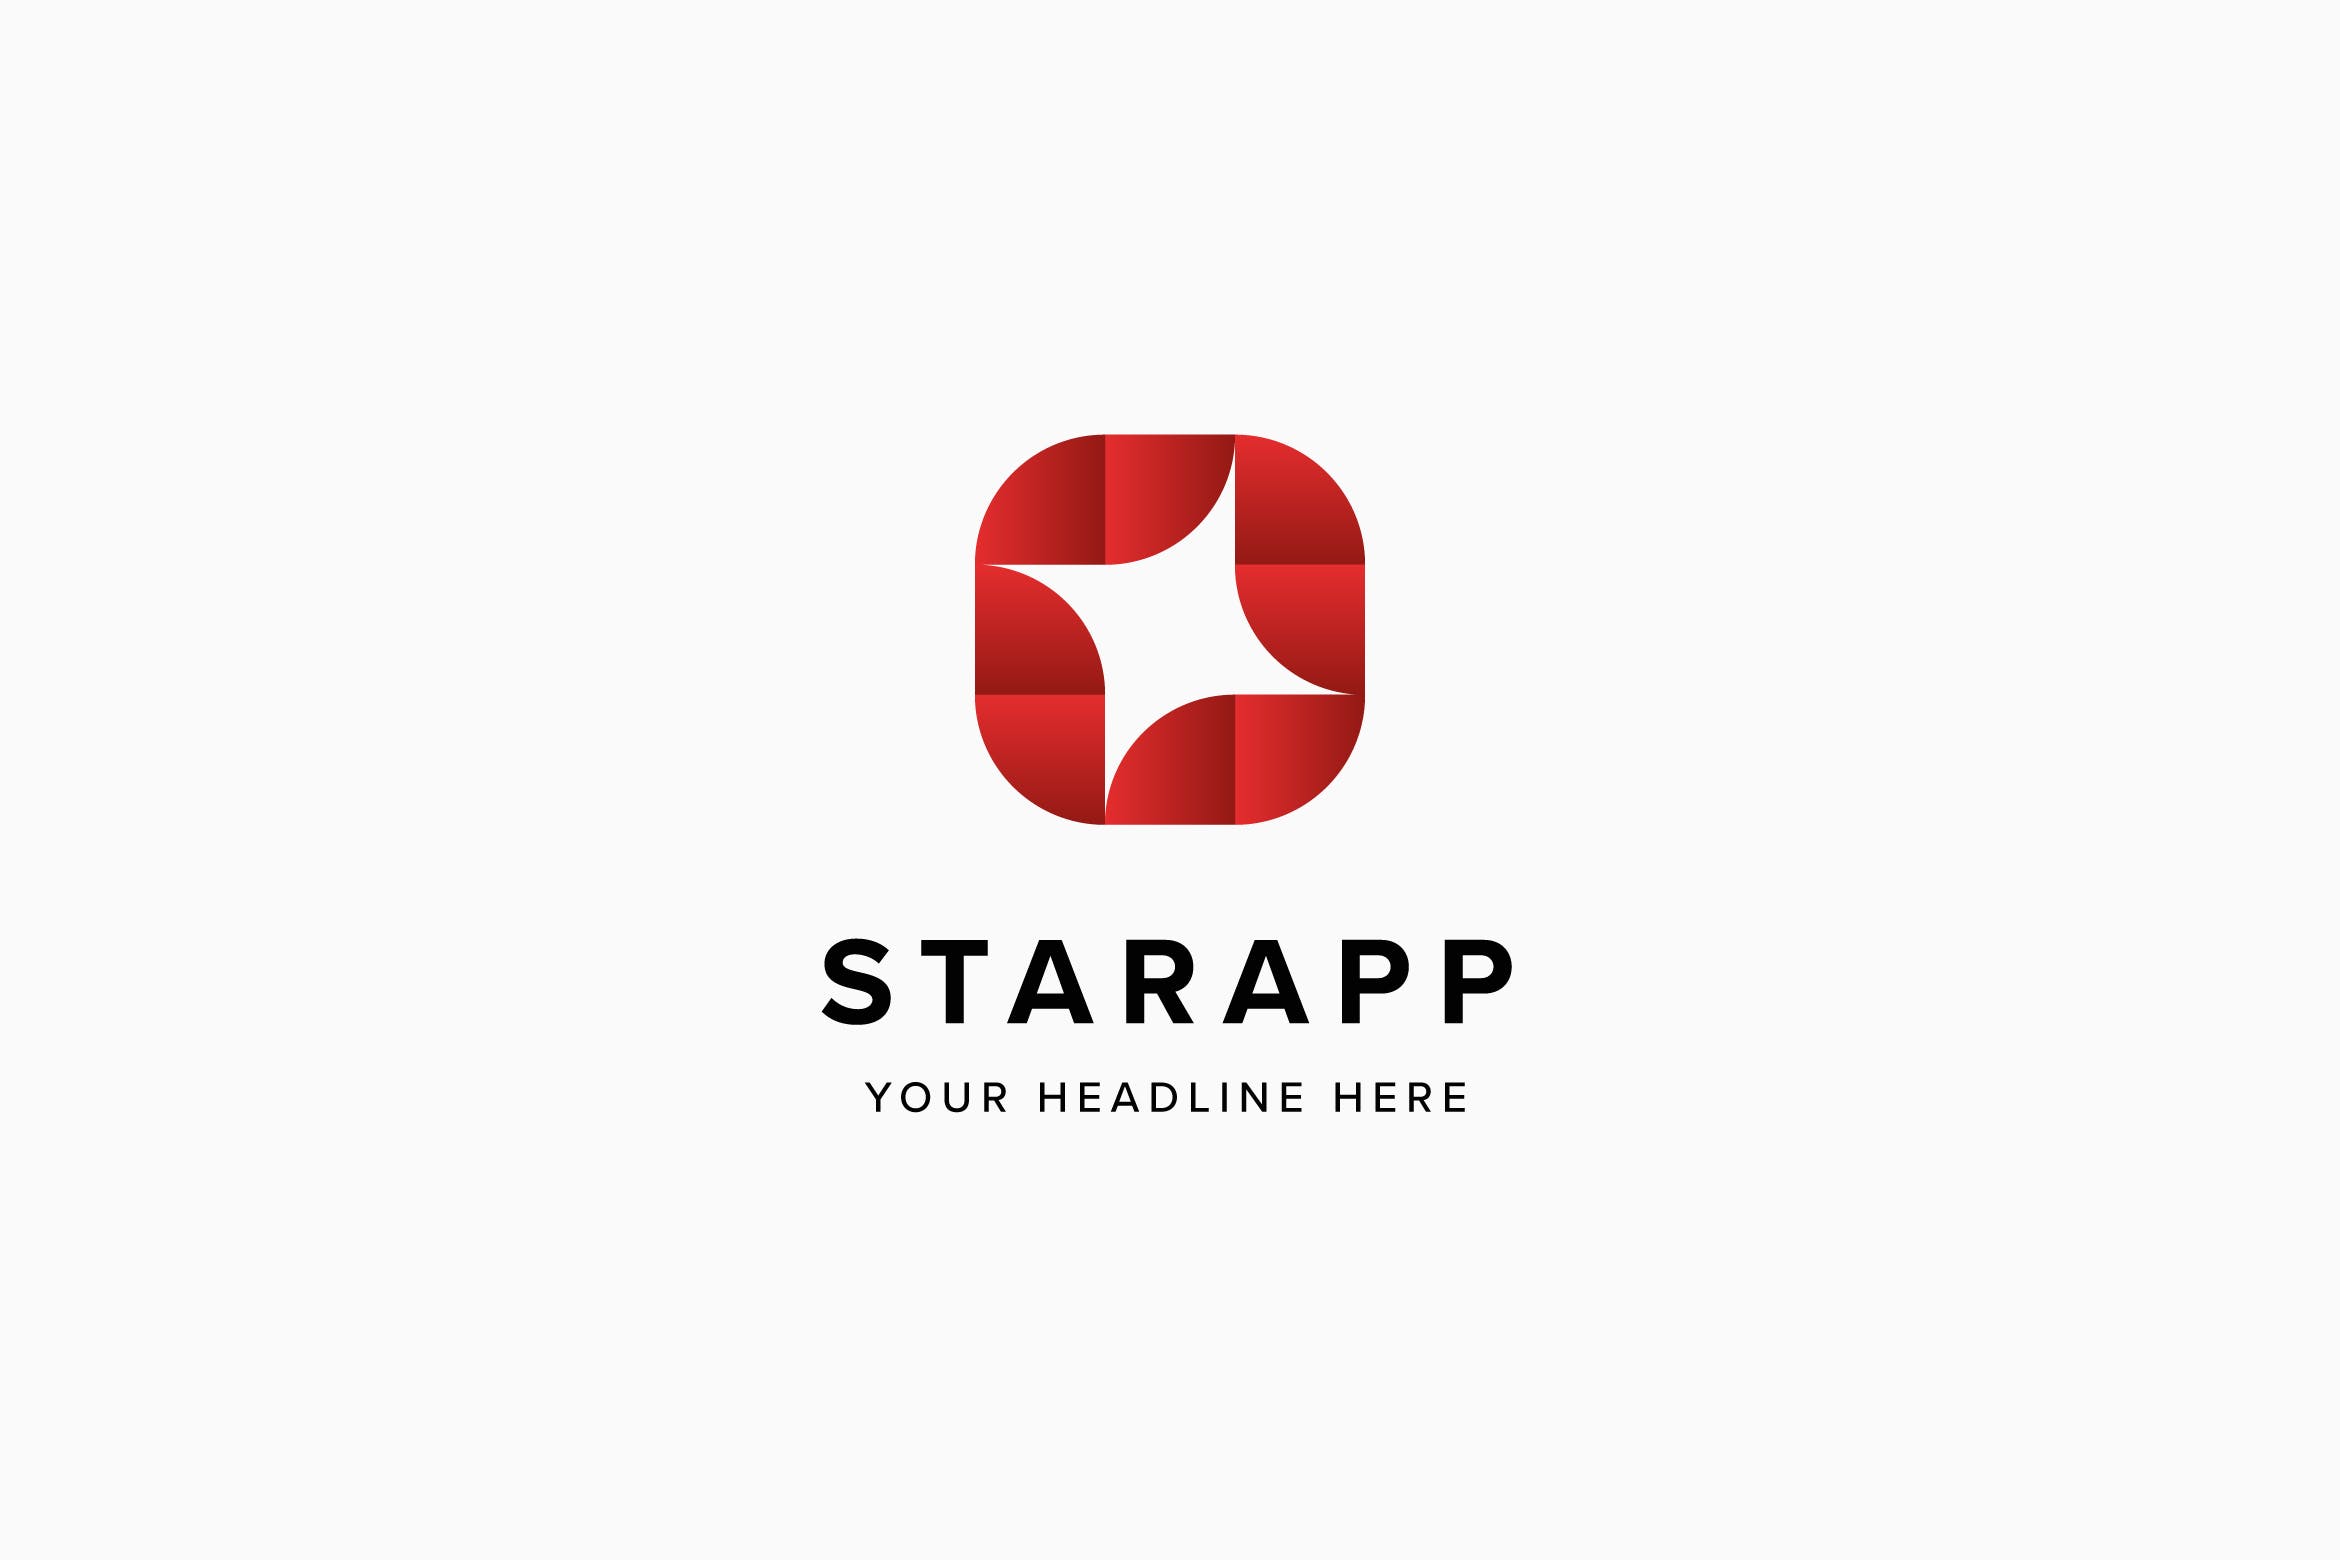 星级APP评选Logo标志设计模板素材 Star App Logo Template插图